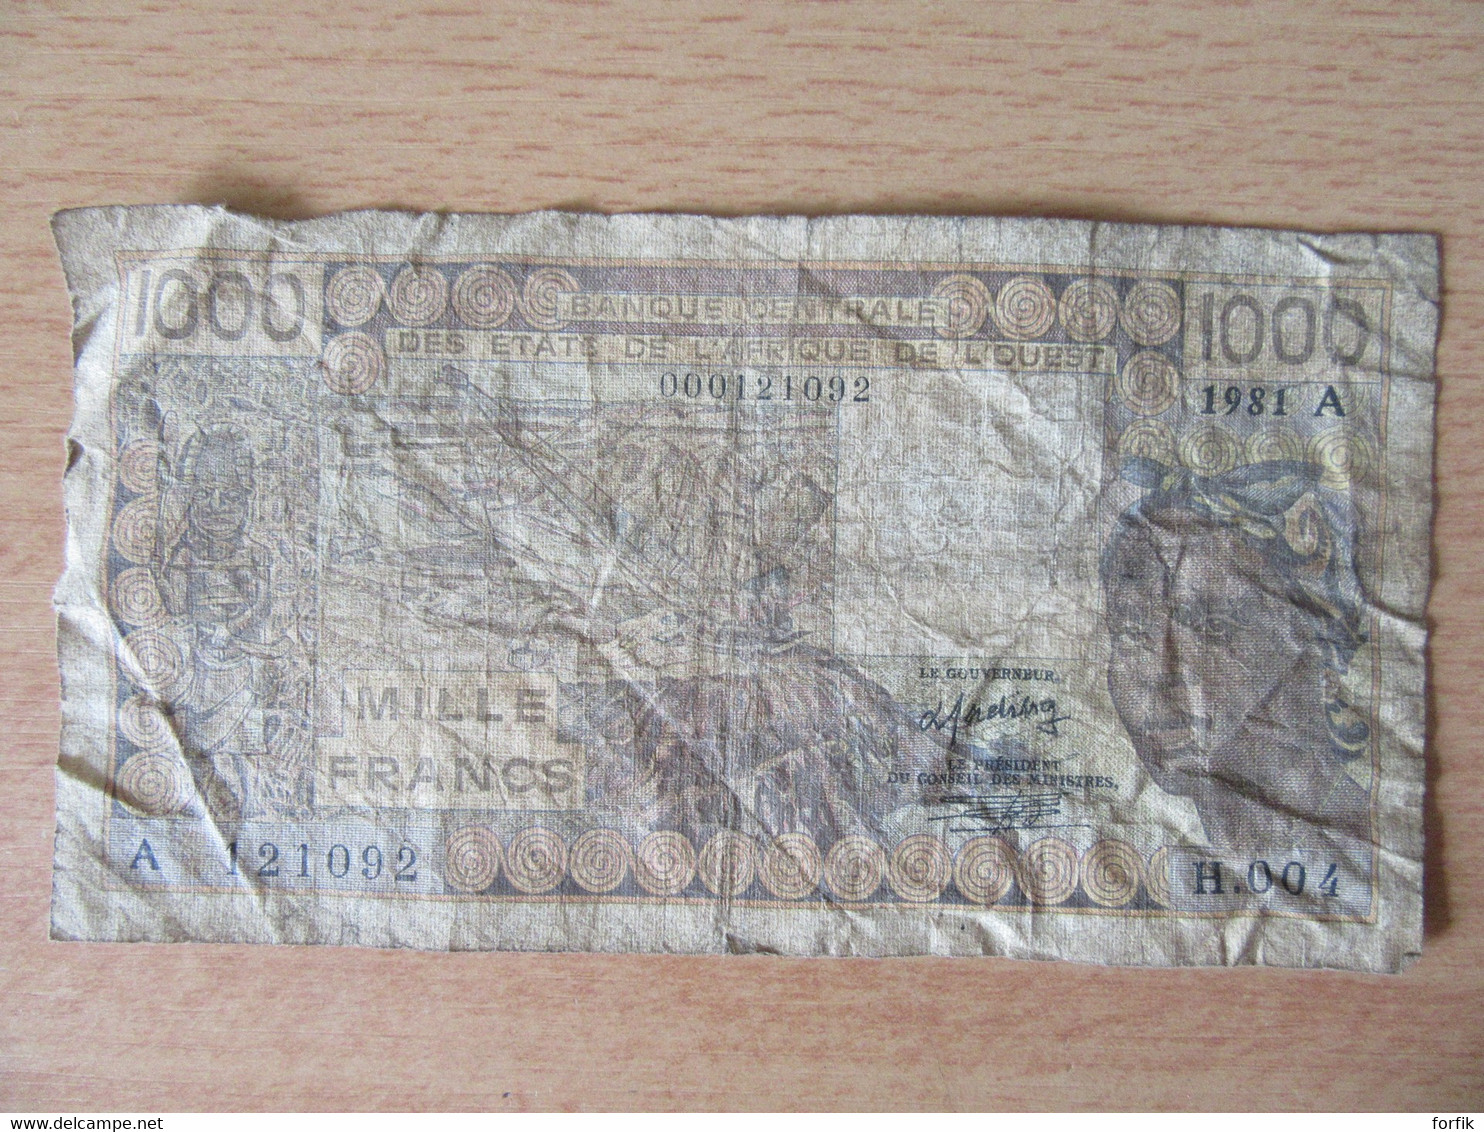 Afrique De L'Ouest - Billet 1000 Francs 1981 A - H.004 - A 121092 - Estados De Africa Occidental